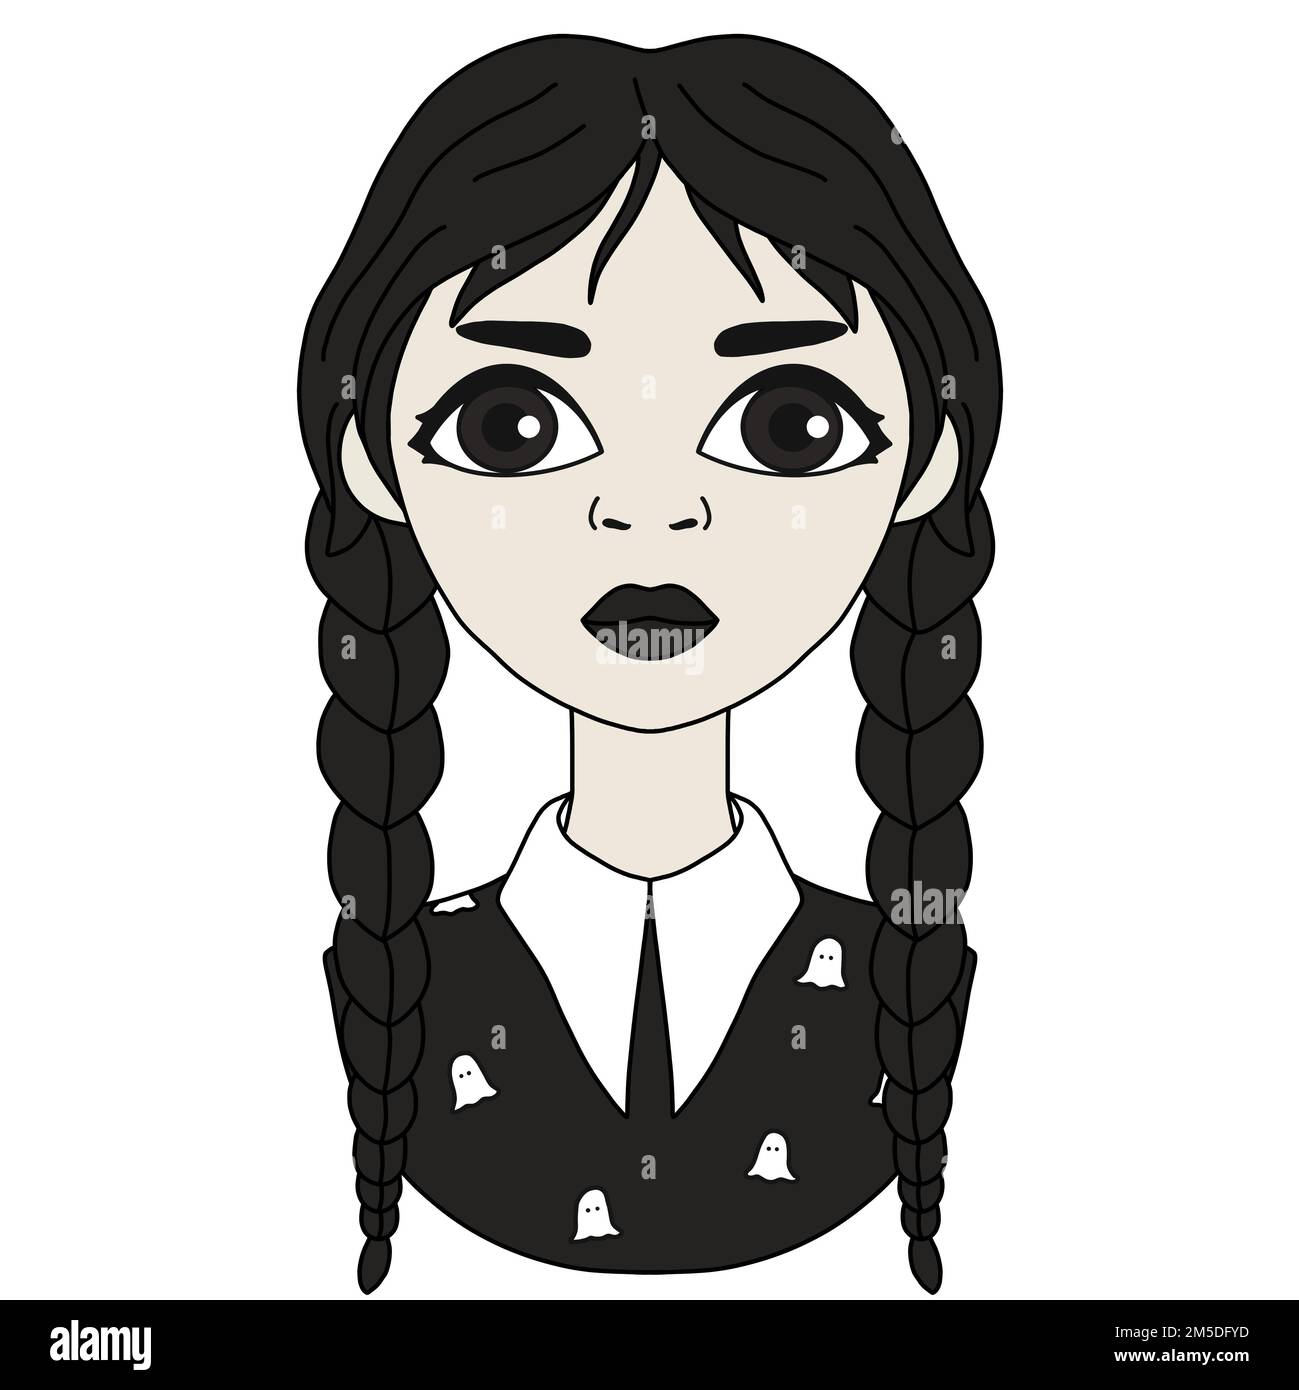 Rasterbild eines Goth-Schulmädchens. Mittwochkonzept. Digitale Illustration eines schwarzen Haarmädchens mit Zöpfen, das schwarze Kleidung auf weißem Hintergrund trägt. Stockfoto